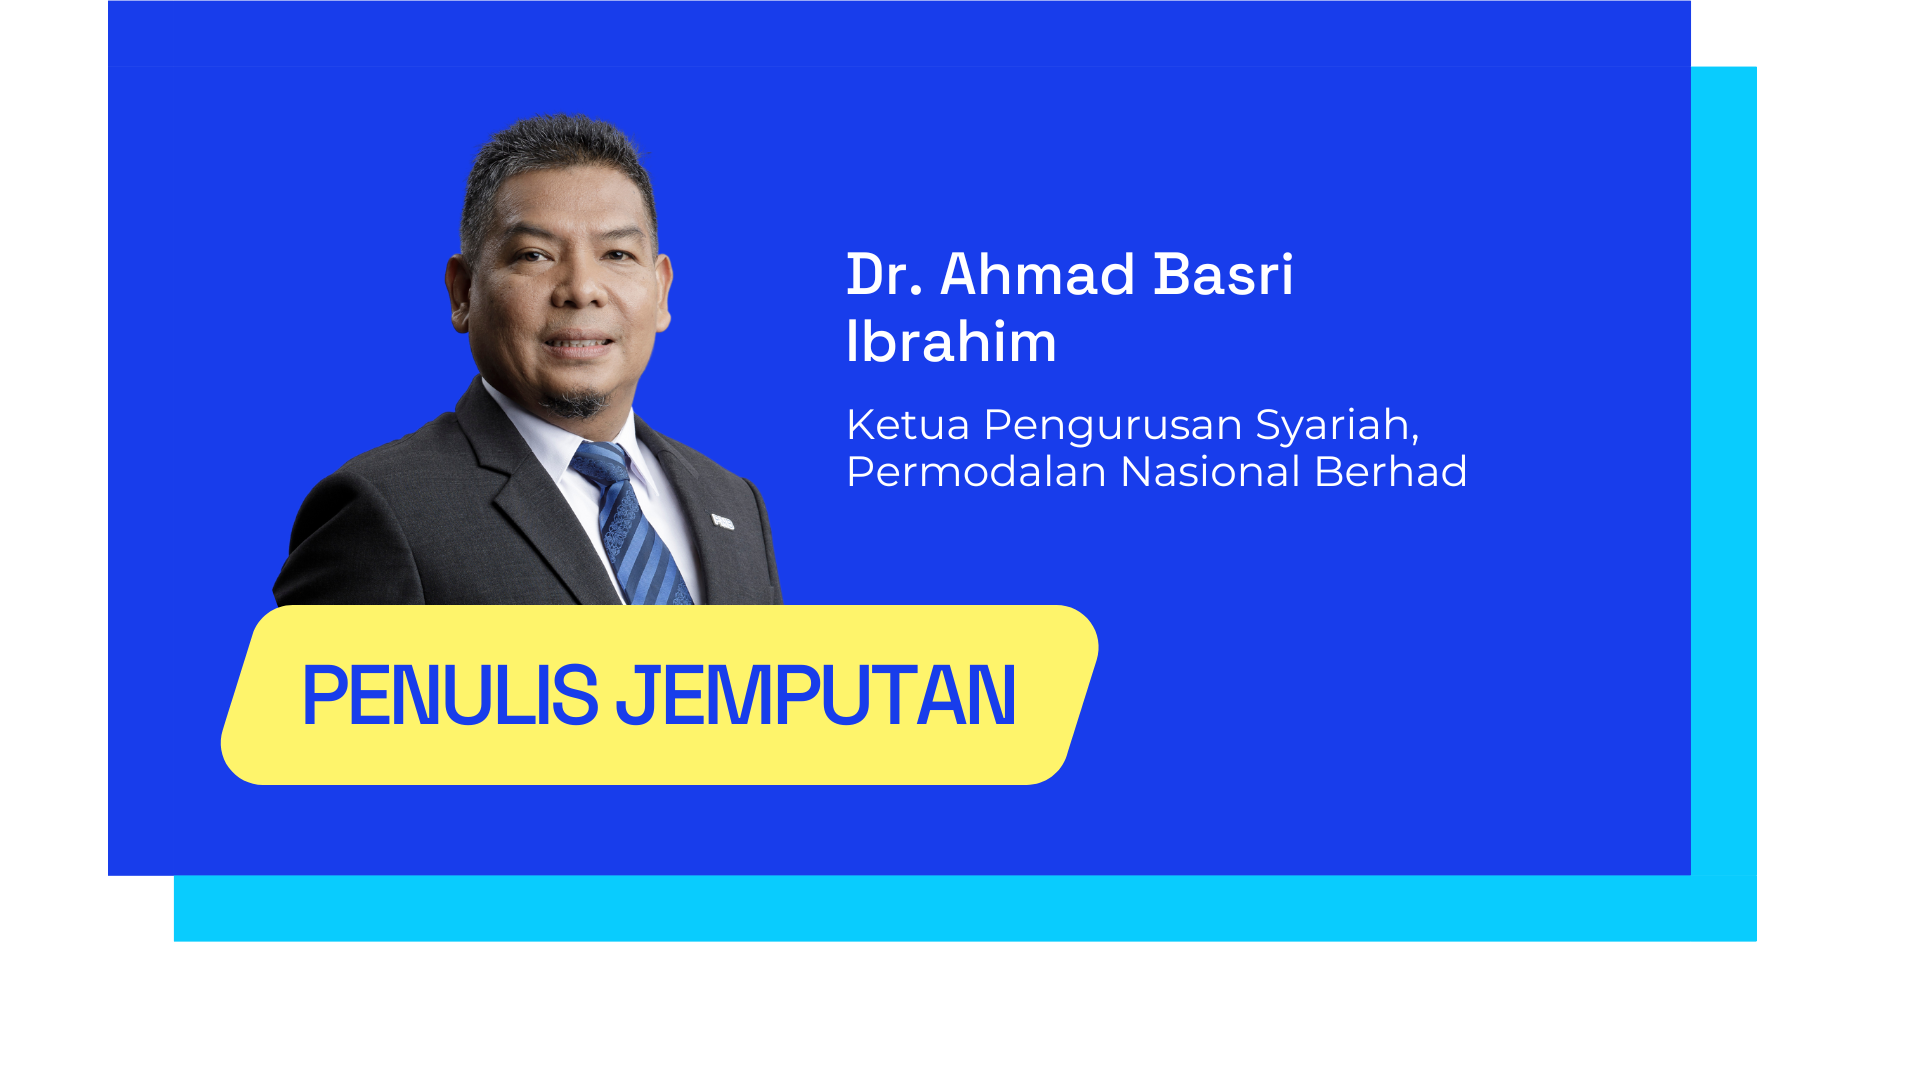 Dr. Ahmad Basri Ibrahim